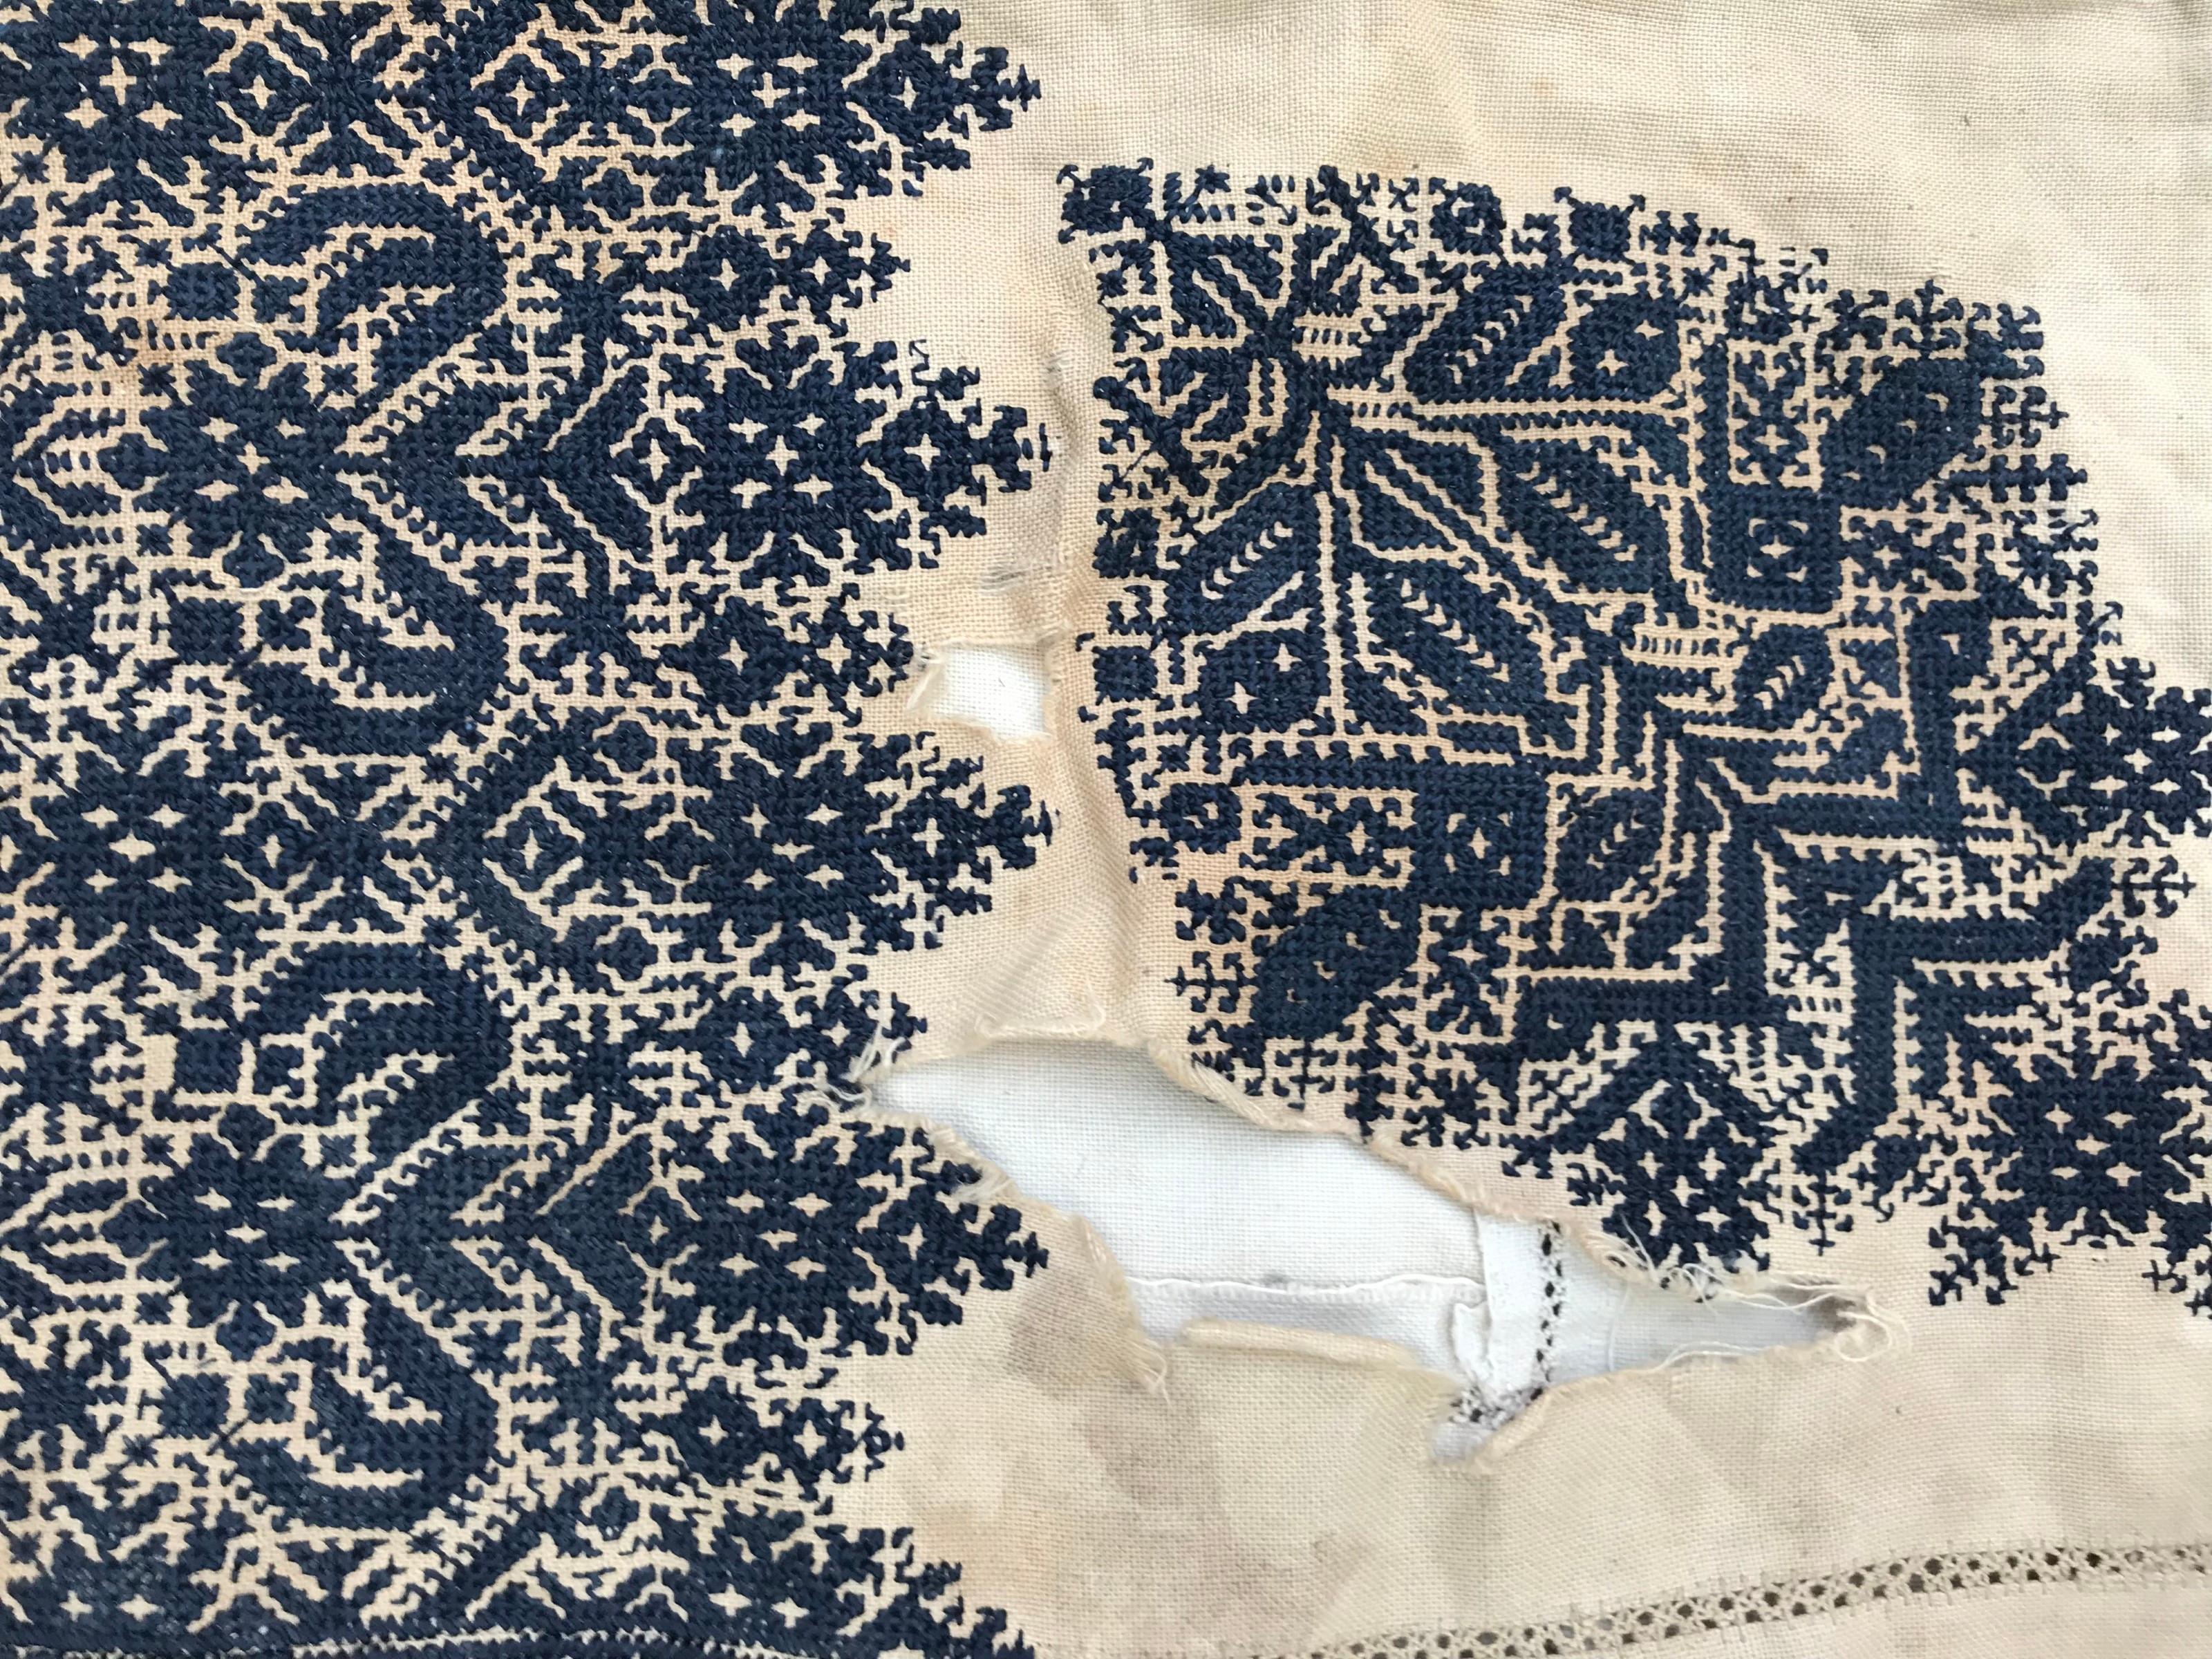 Schöne und sehr feine Stickerei aus Fes, Marokko, blaue Seide handgestickt auf Baumwollgrund.

✨✨✨
